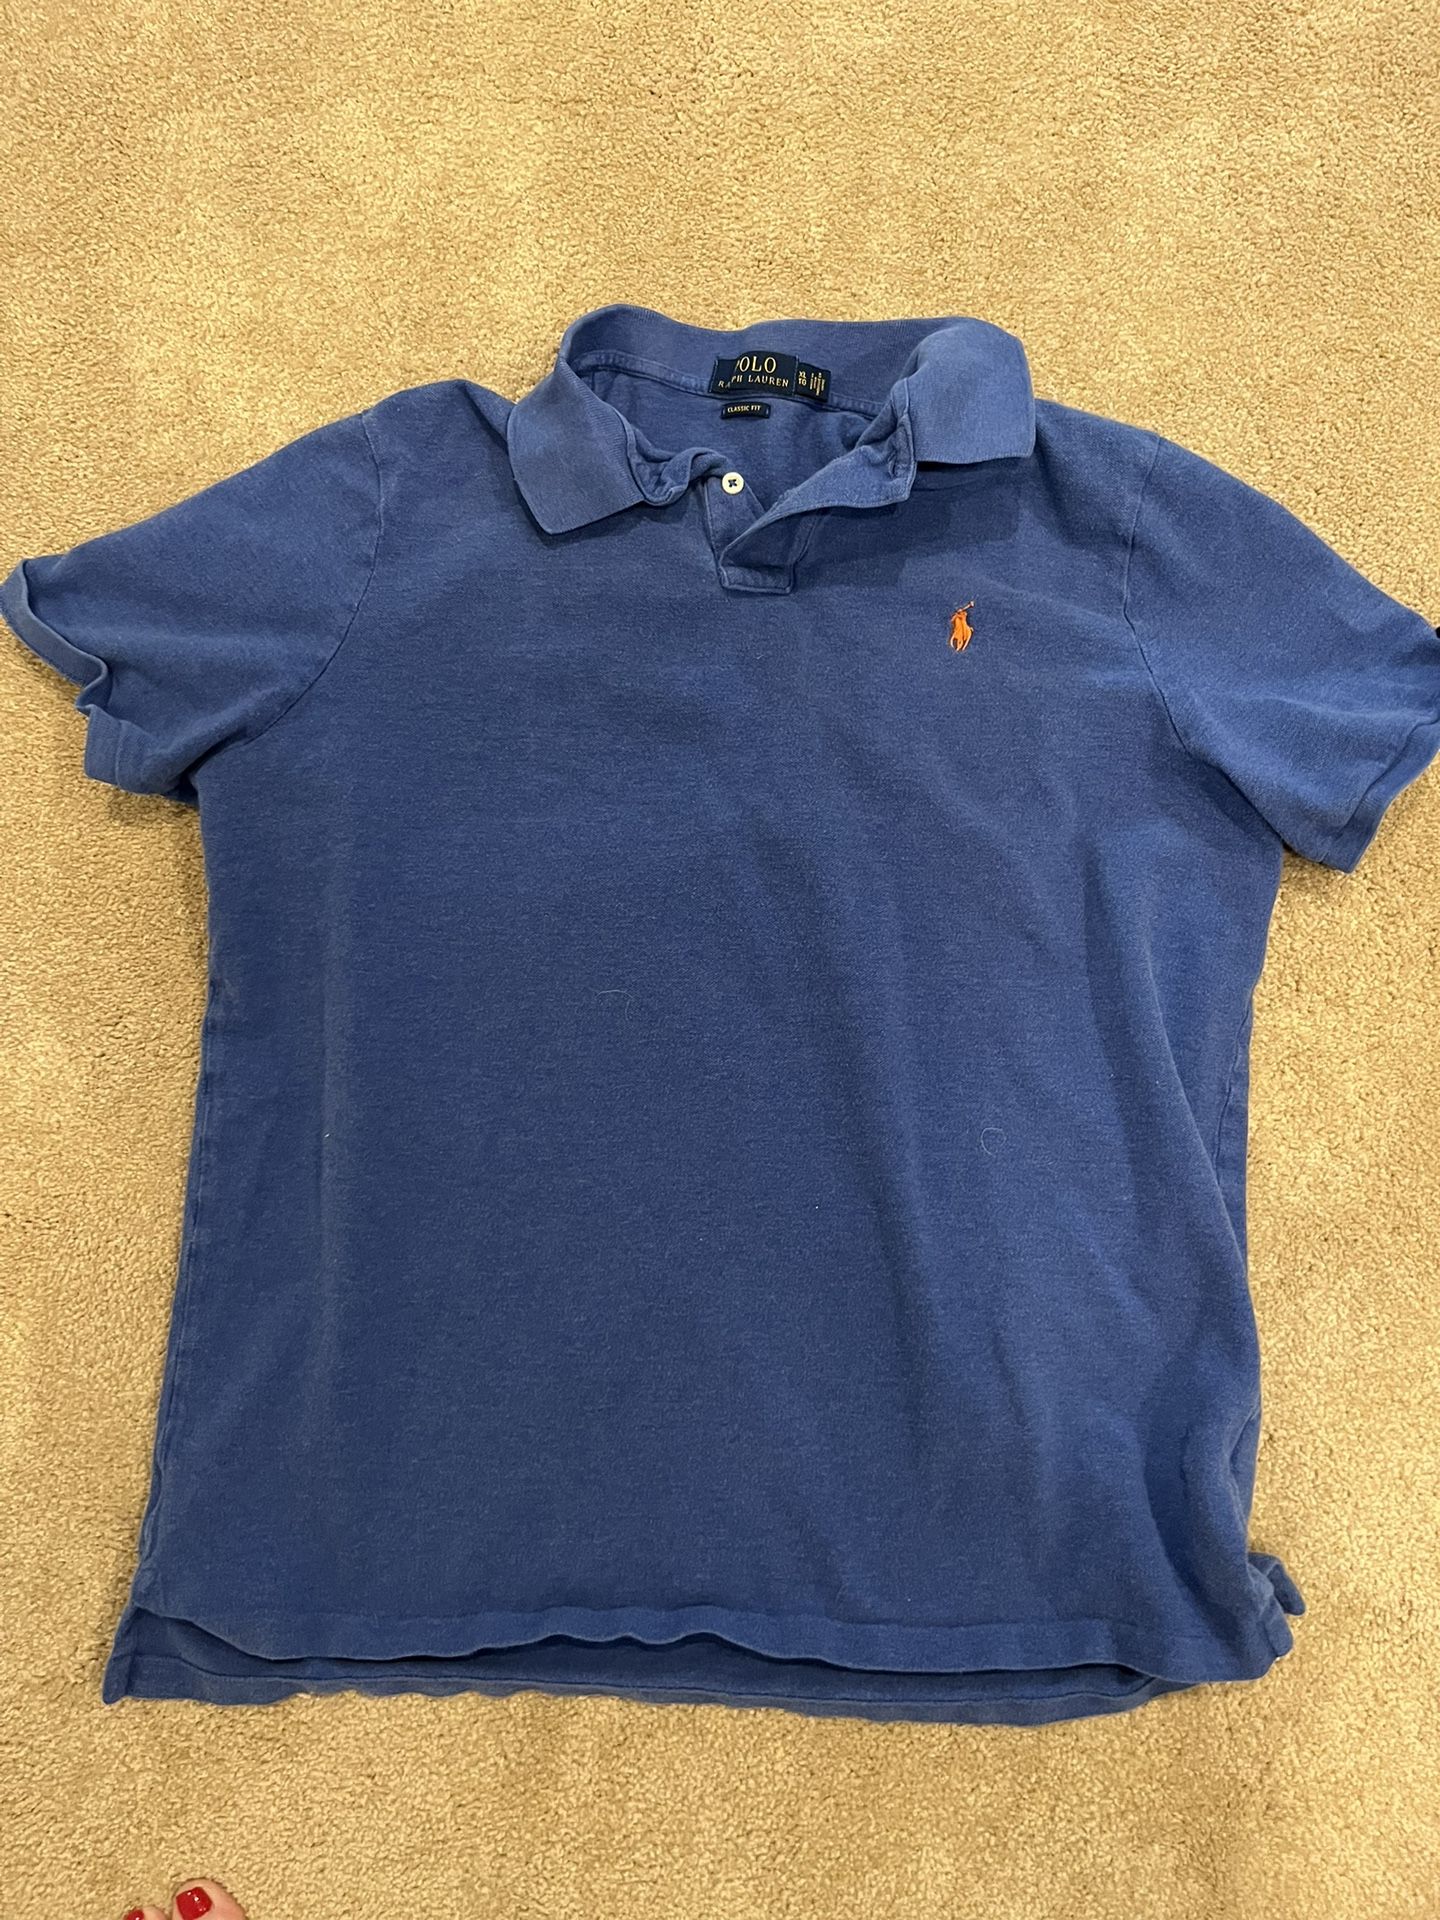 Polo Ralph Lauren XL Shirt  Short Sleeve 